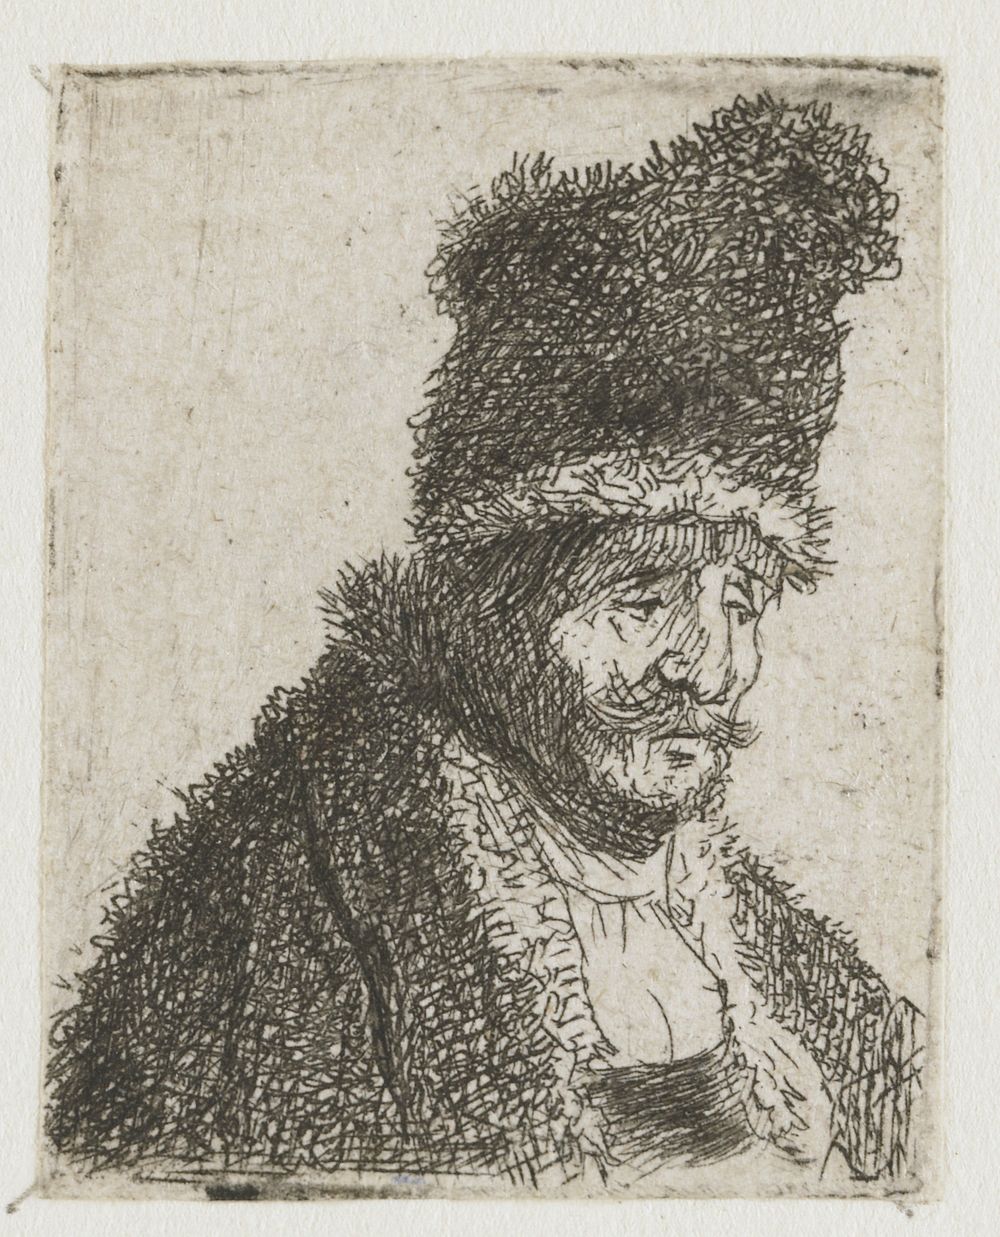 Sheet of studies of men's head: old man in fur coat and high cap (c. 1629) by Rembrandt van Rijn and Rembrandt van Rijn